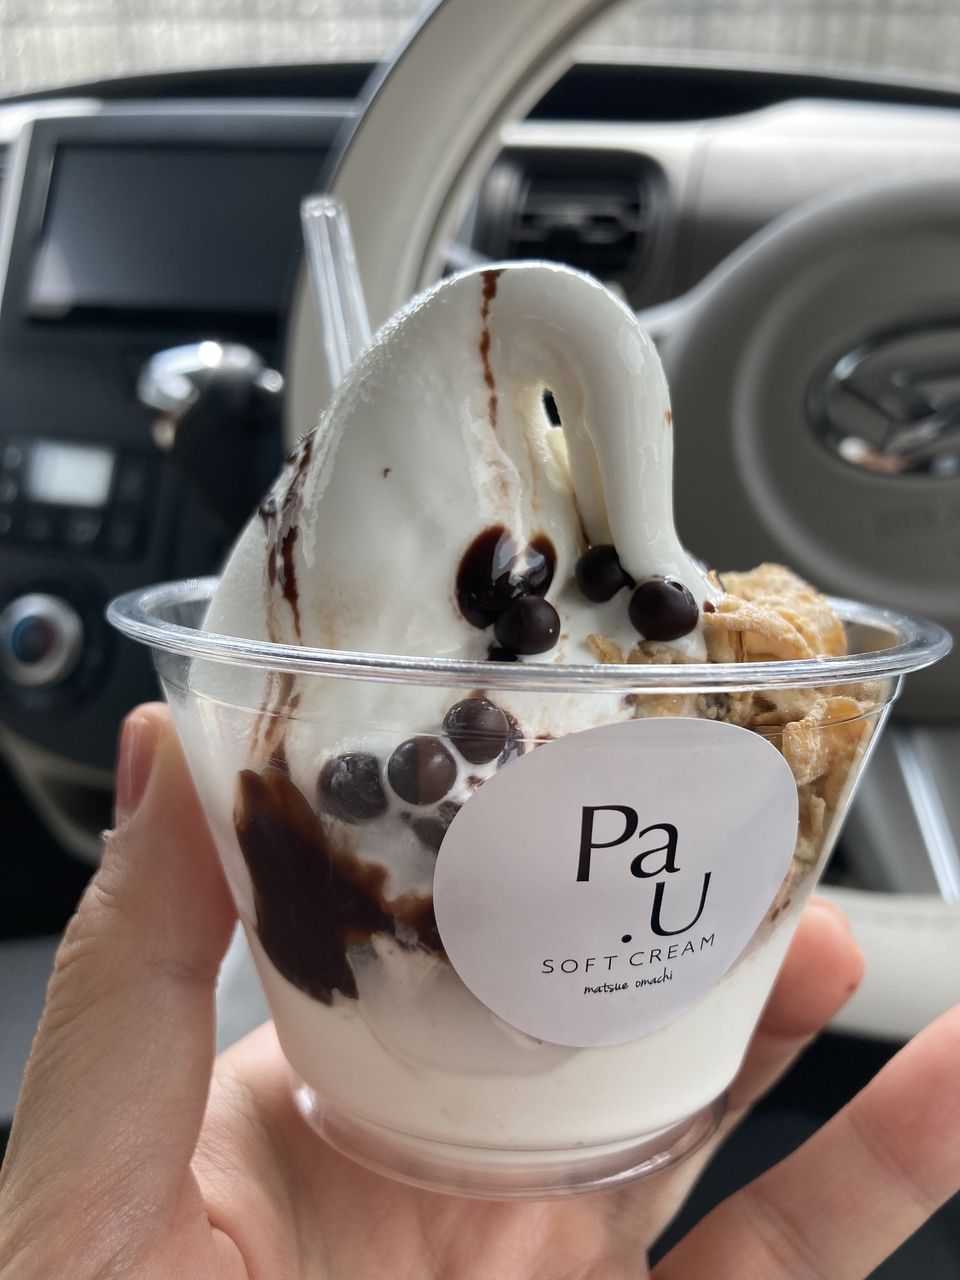 ソフトクリーム専門店「PAU」さんに行ってみました。